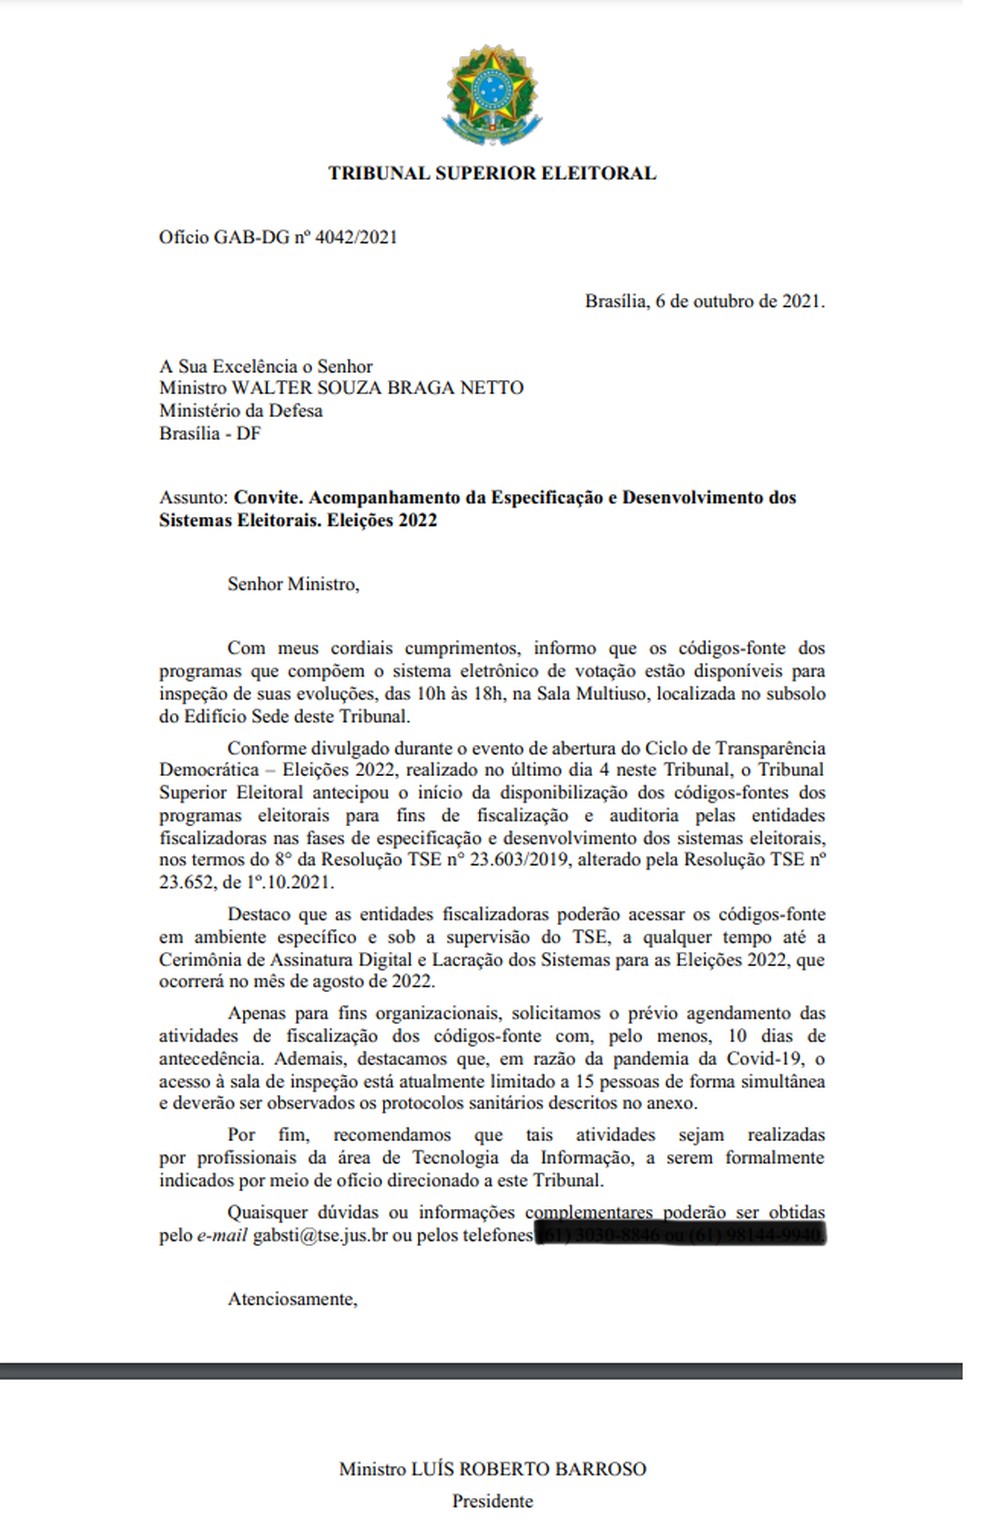 Ofício enviado ao então ministro da Defesa Braga Netto, com data de 6 de outubro de 2021. — Foto: Reprodução